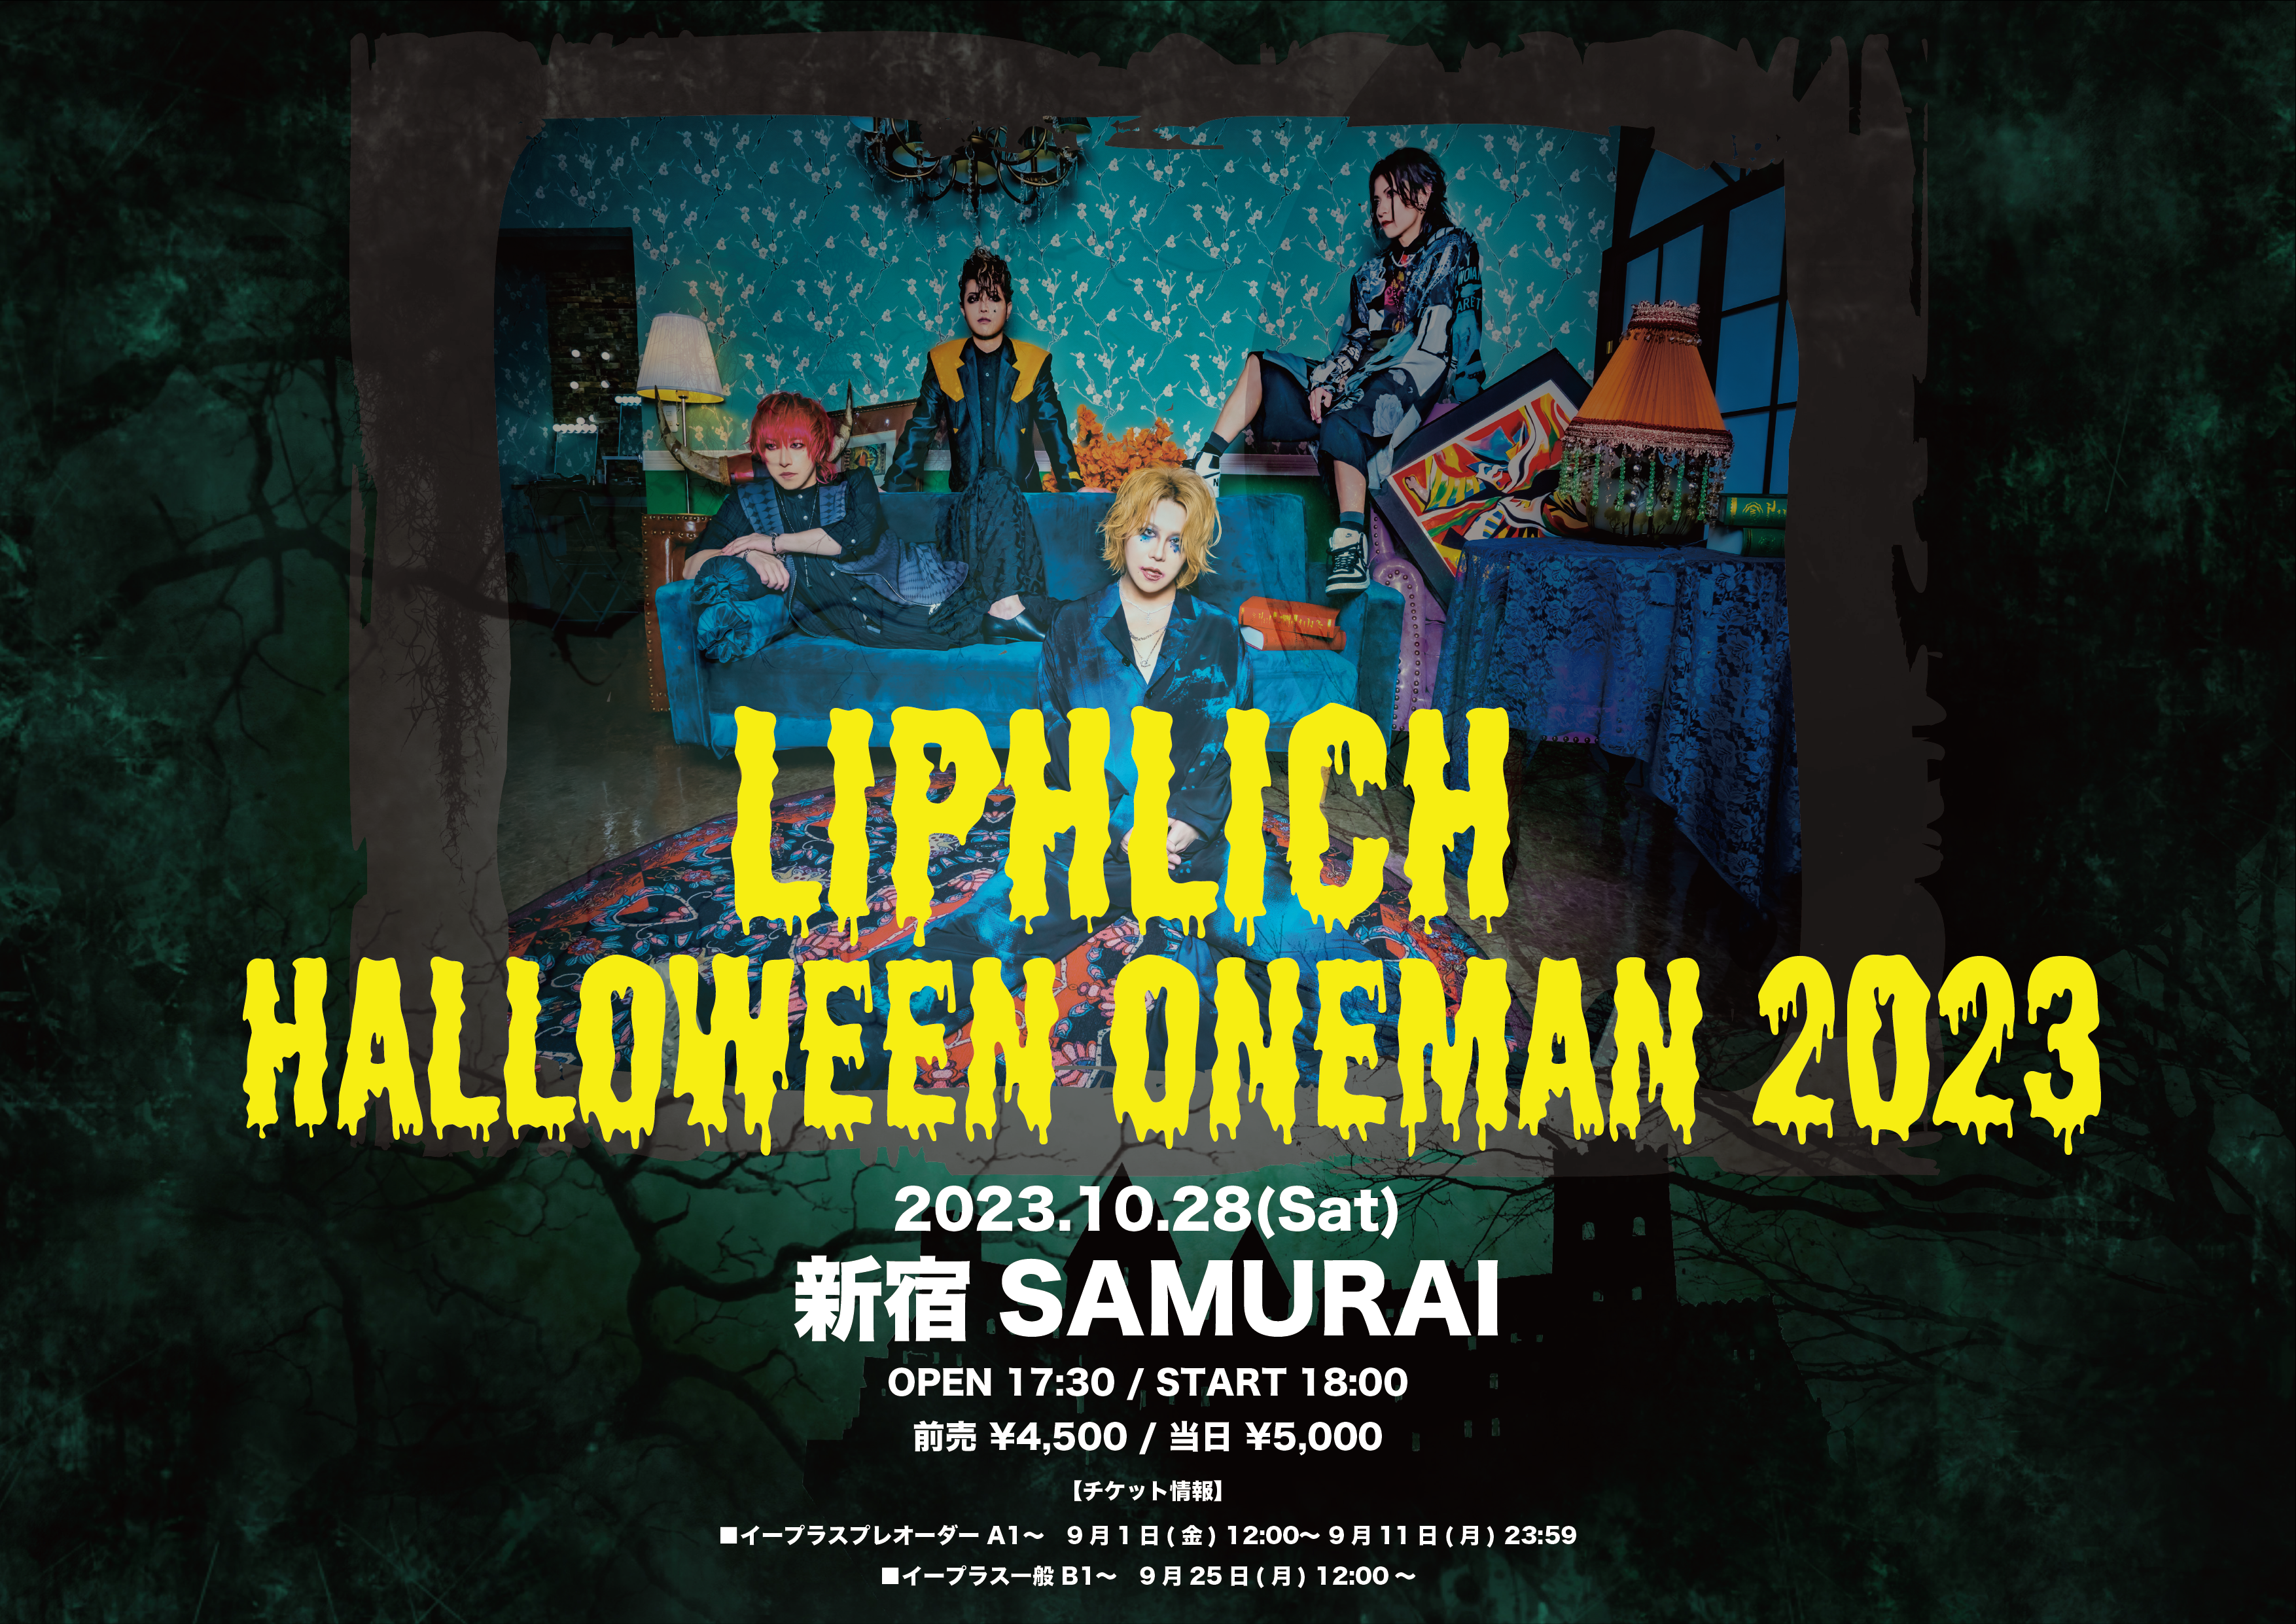 LIPHLICH Halloween Oneman 2023